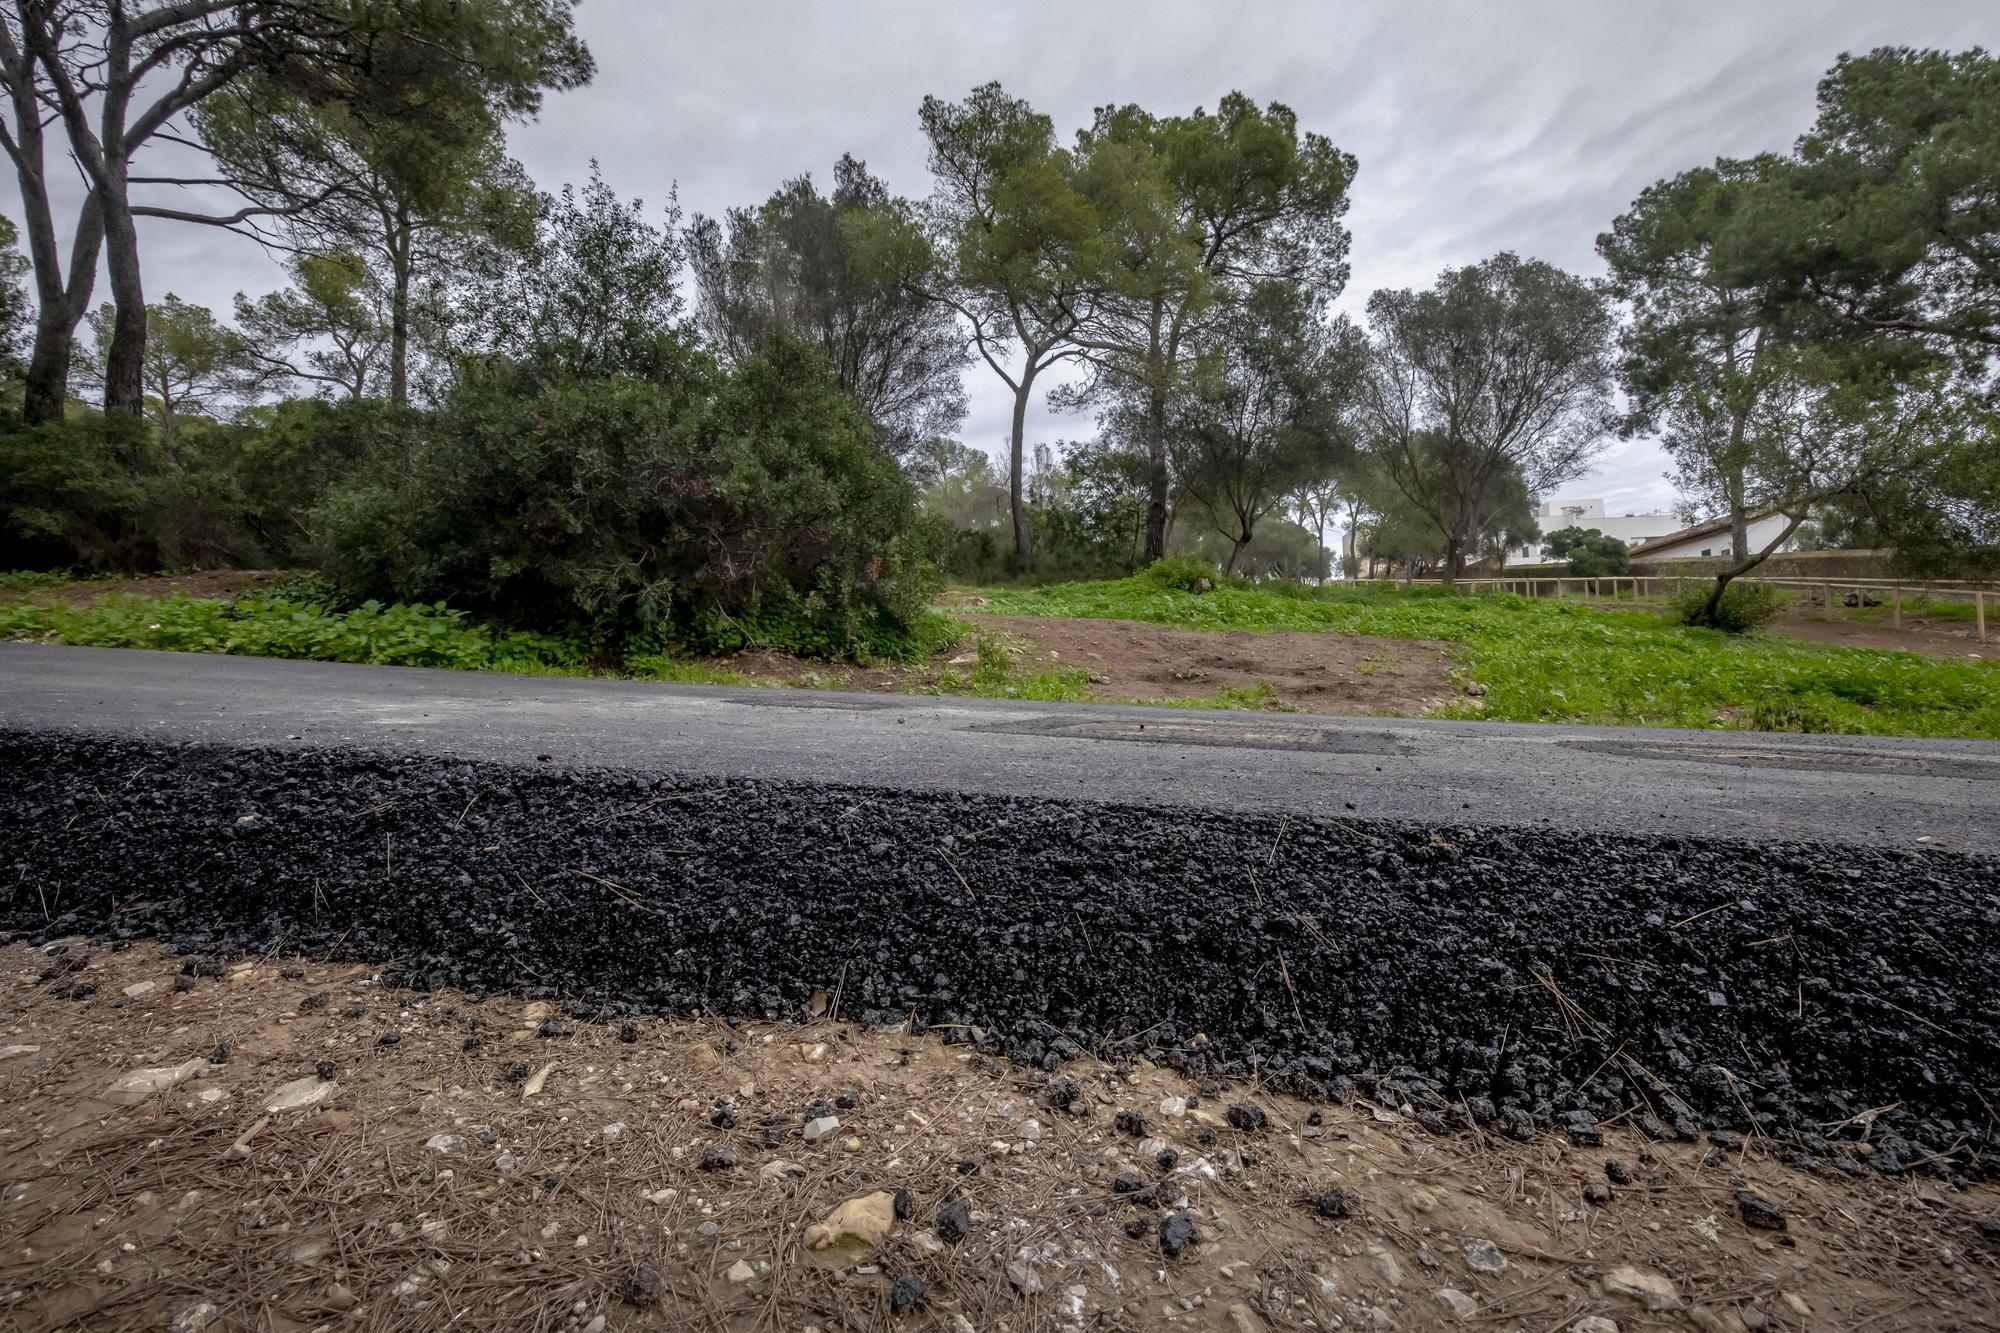 Las fotos del asfaltado del bosque de Bellver que indigna a ciudadanos y ecologistas